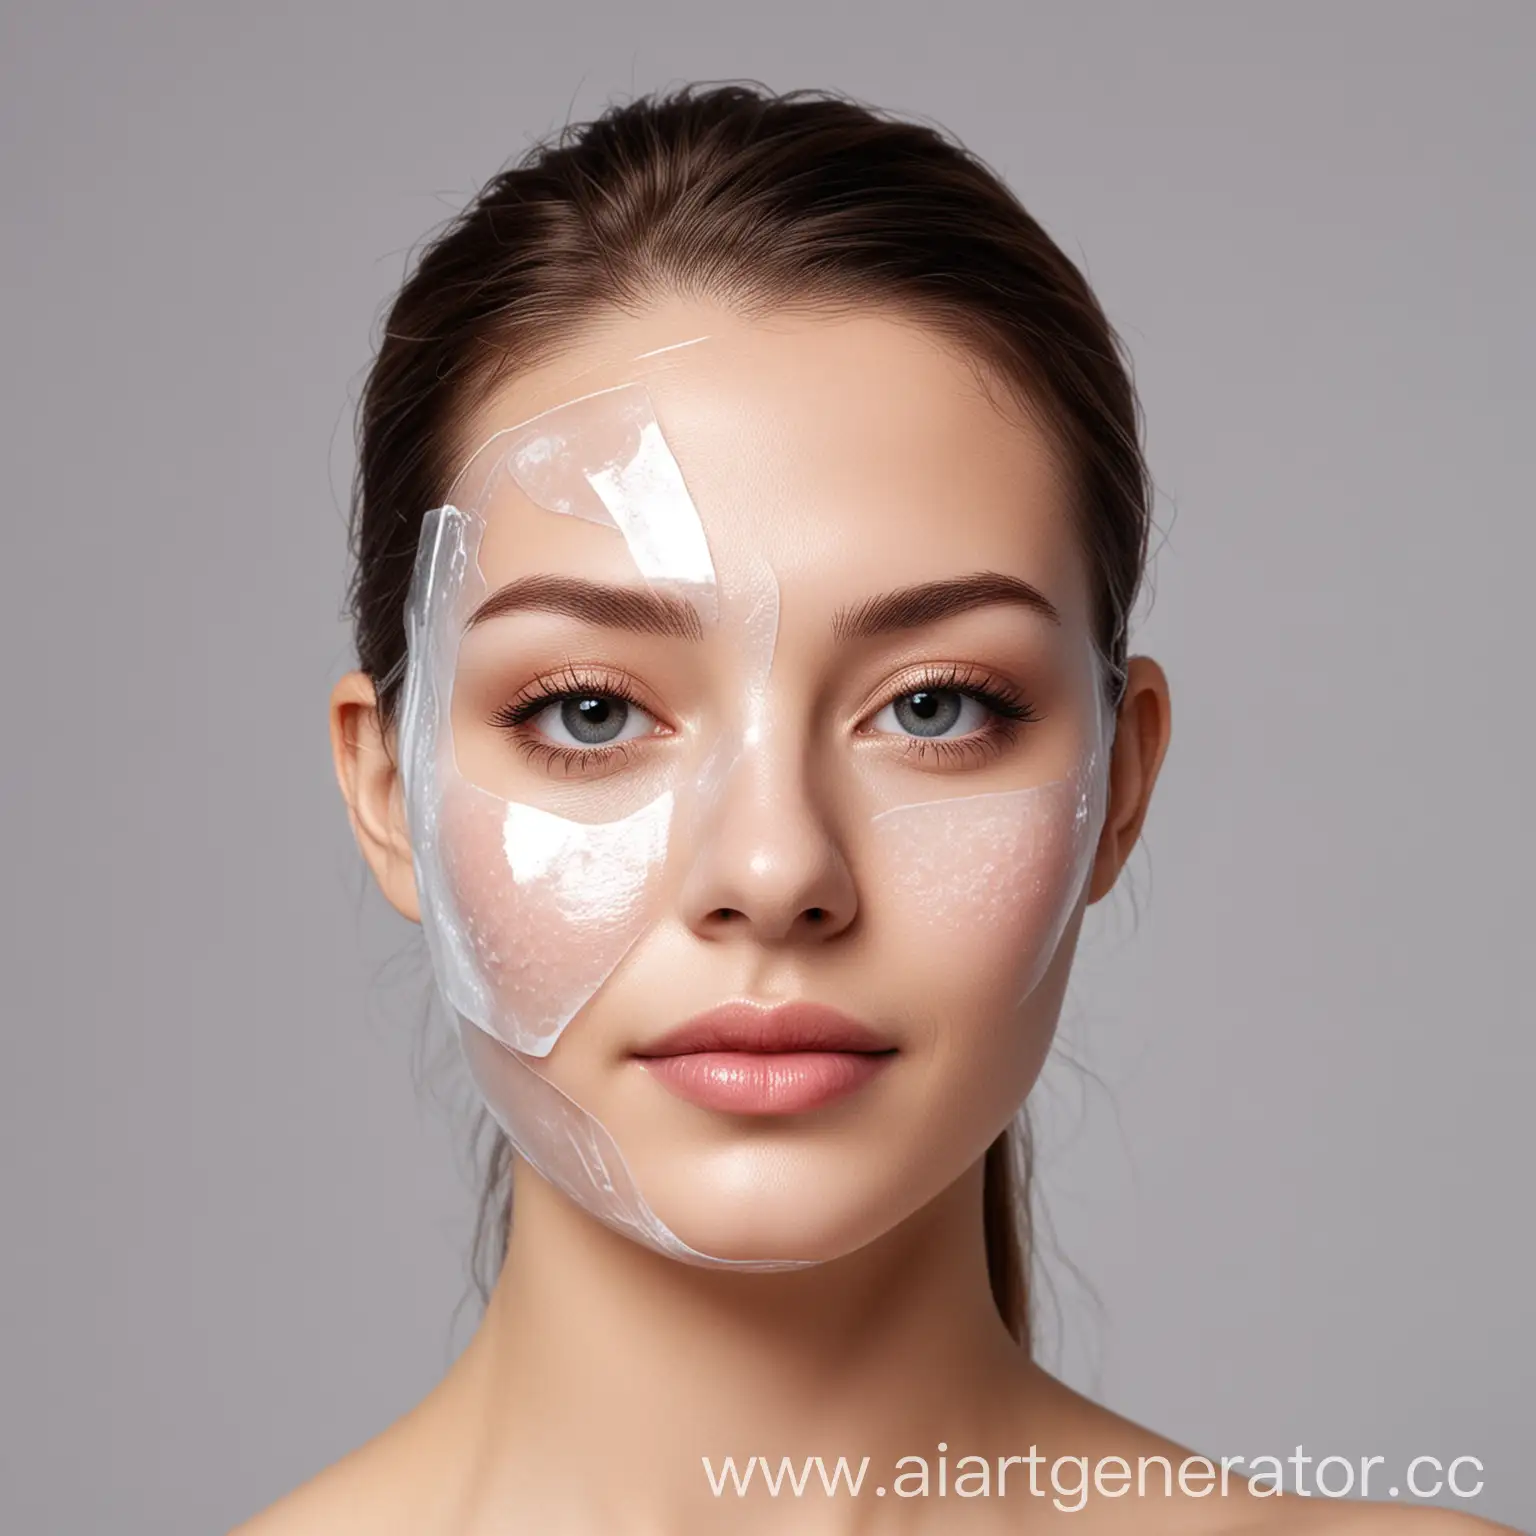 создай примеры картинок гидрогелевых масок для лица для продажи на онлайн сайте, 